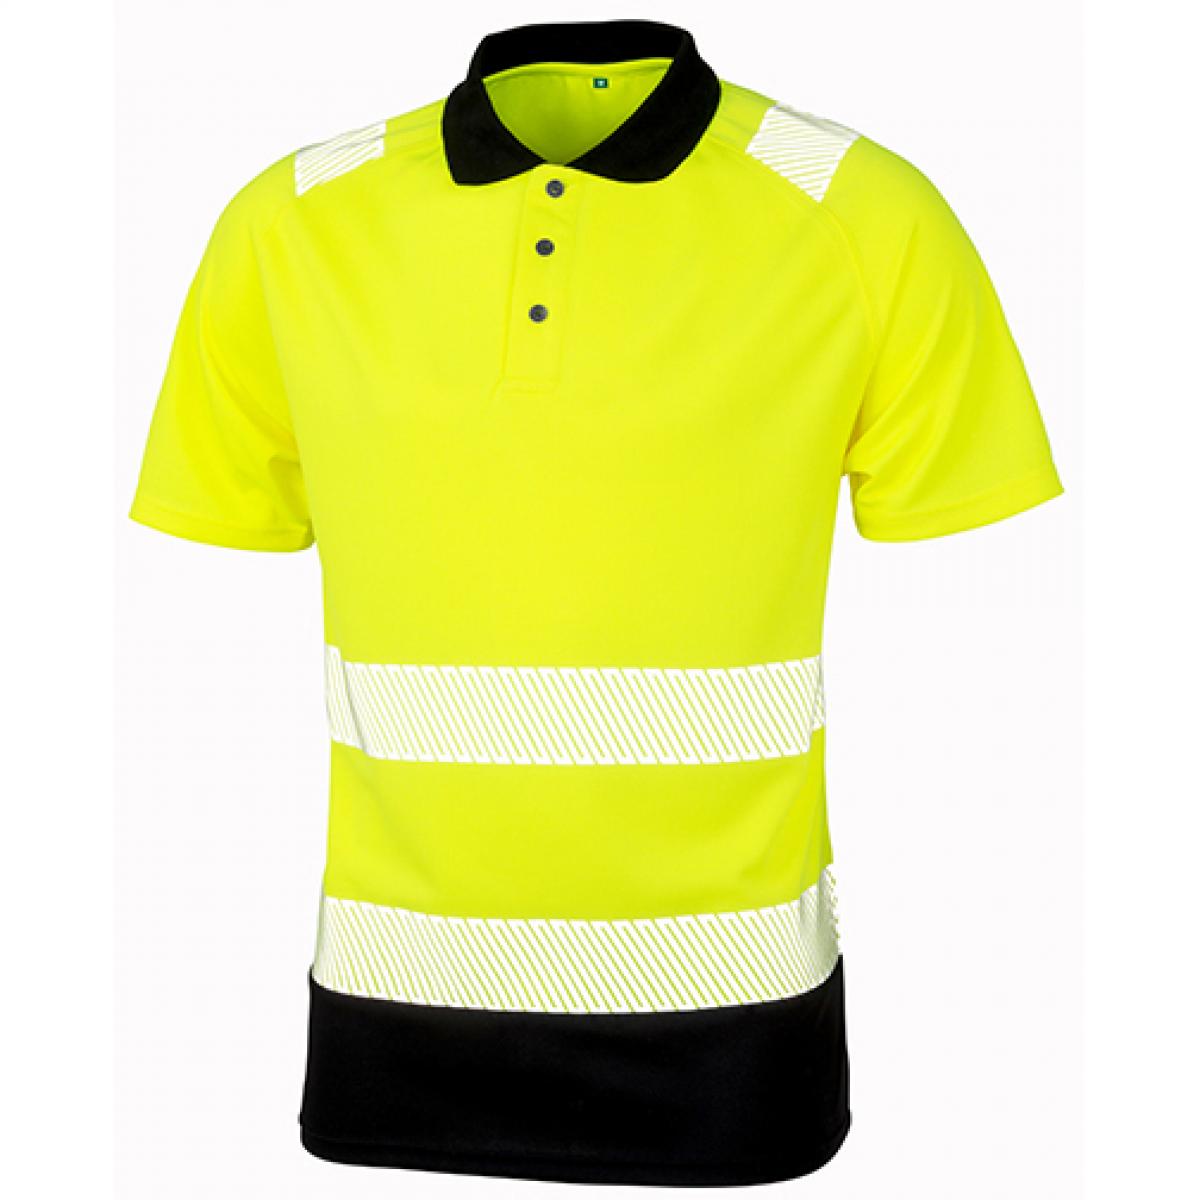 Hersteller: Result Genuine Recycled Herstellernummer: R501X Artikelbezeichnung: Recycled Safety Polo Shirt - Schnell trocknend Farbe: Fluorescent Orange/Black